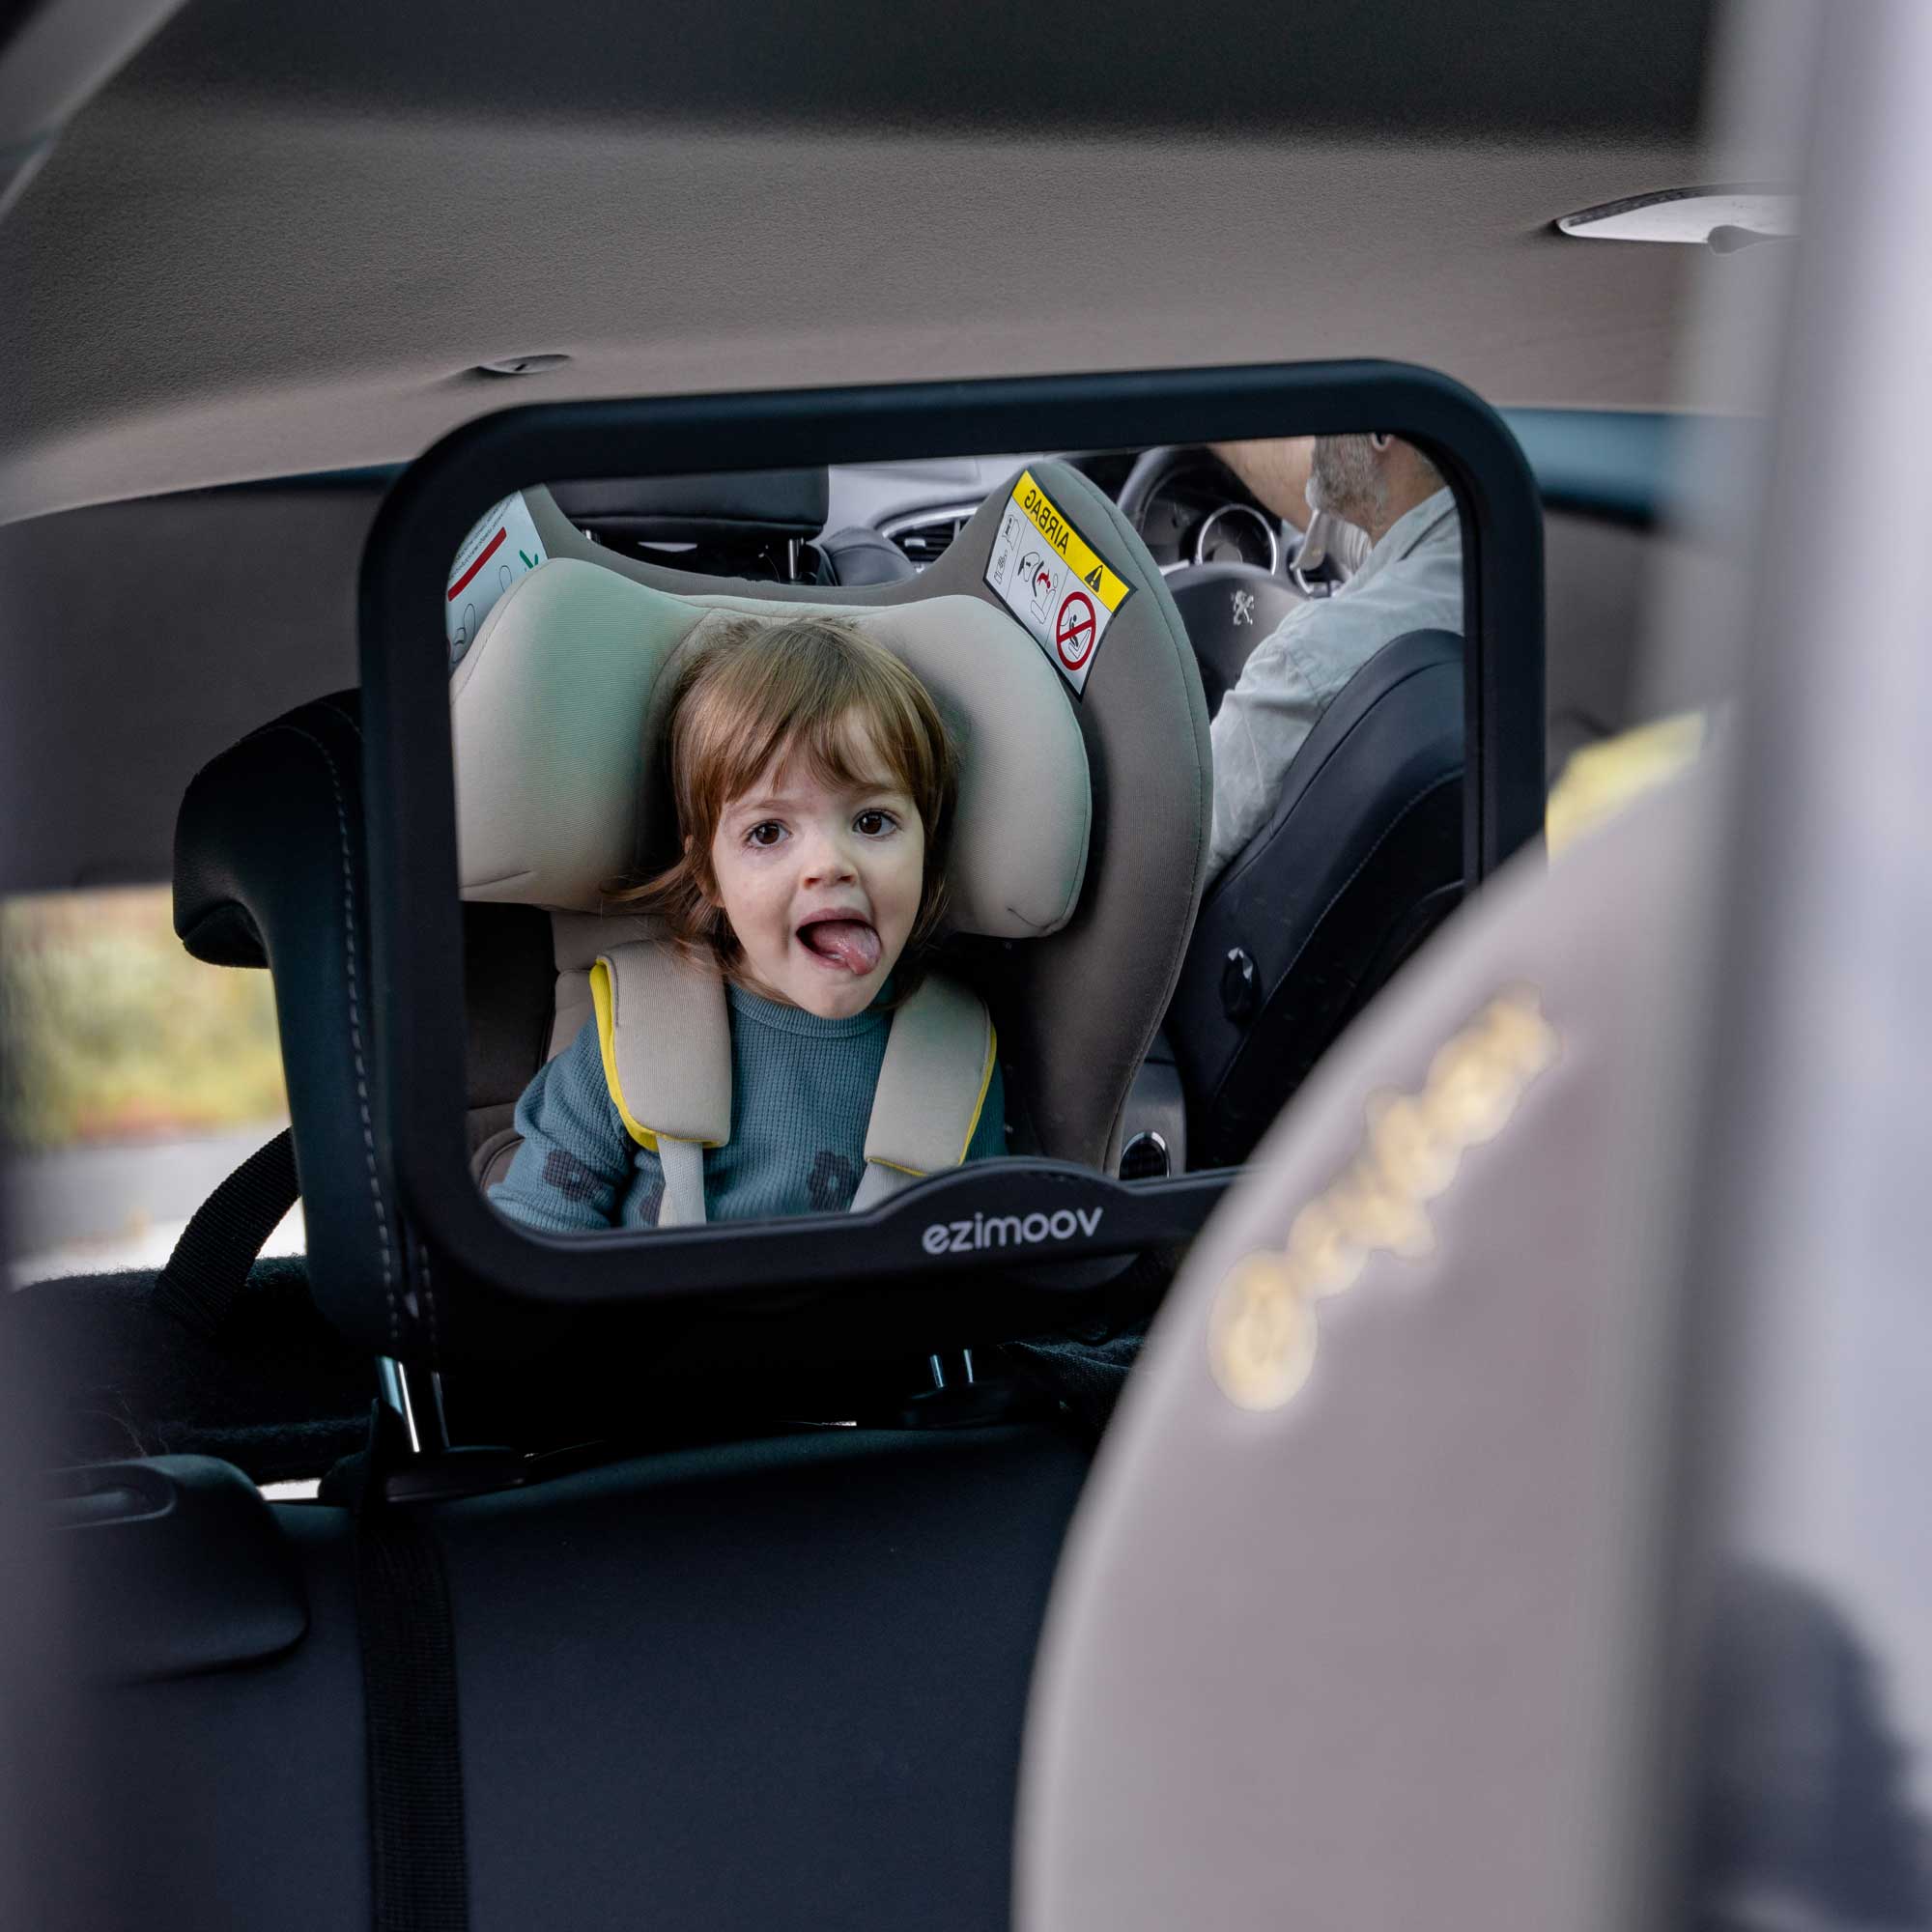 Miroir de surveillance siège auto